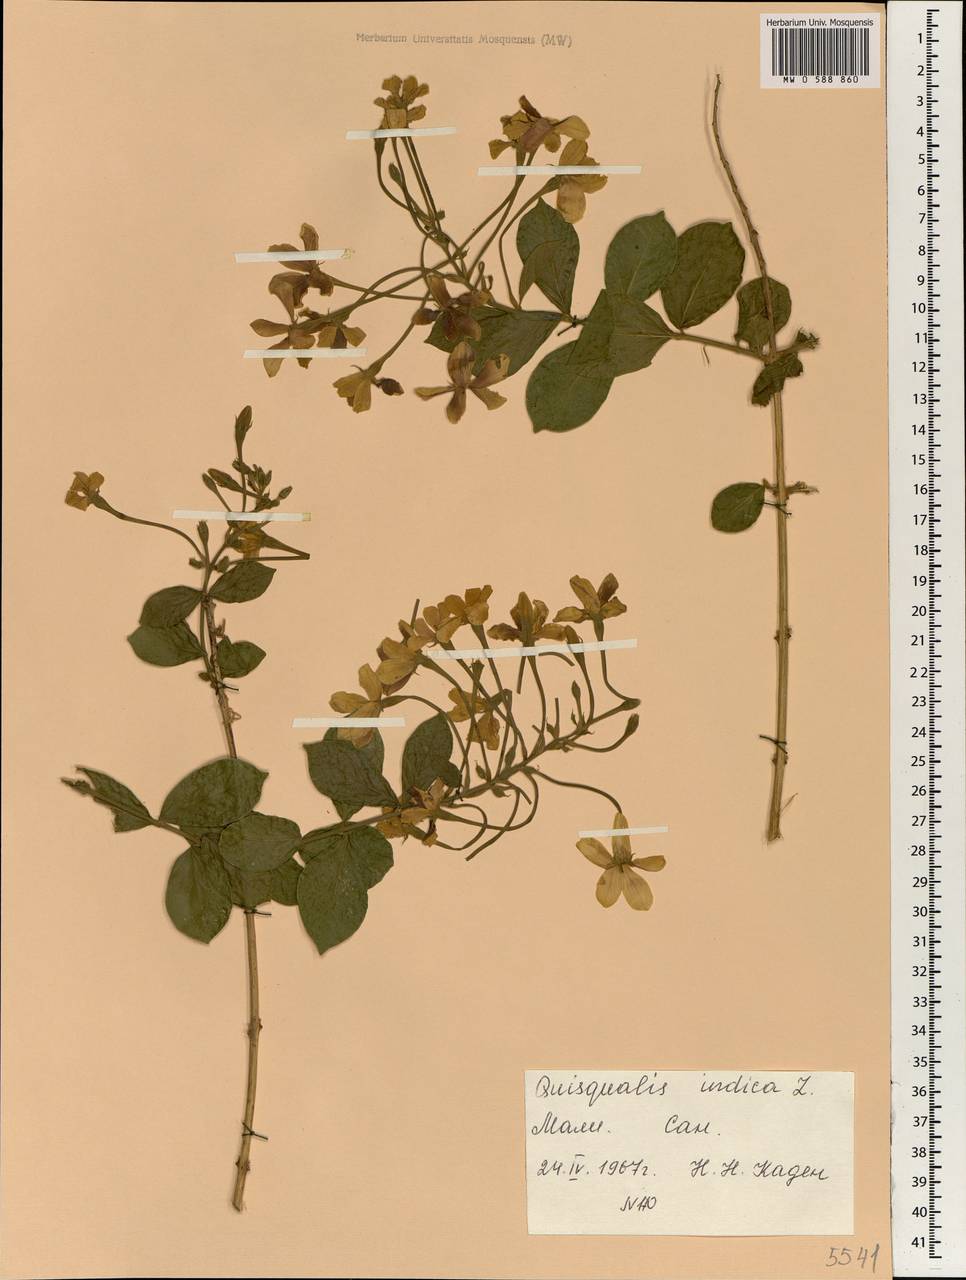 Combretum indicum (L.) C. C. H. Jongkind, Африка (AFR) (Мали)